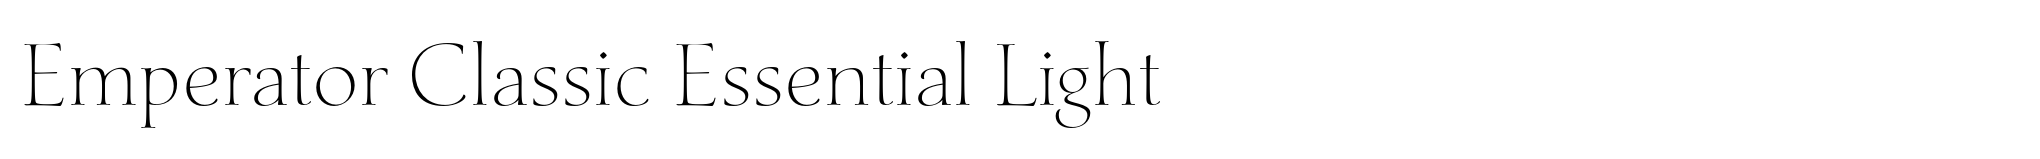 Emperator Classic Essential Light image